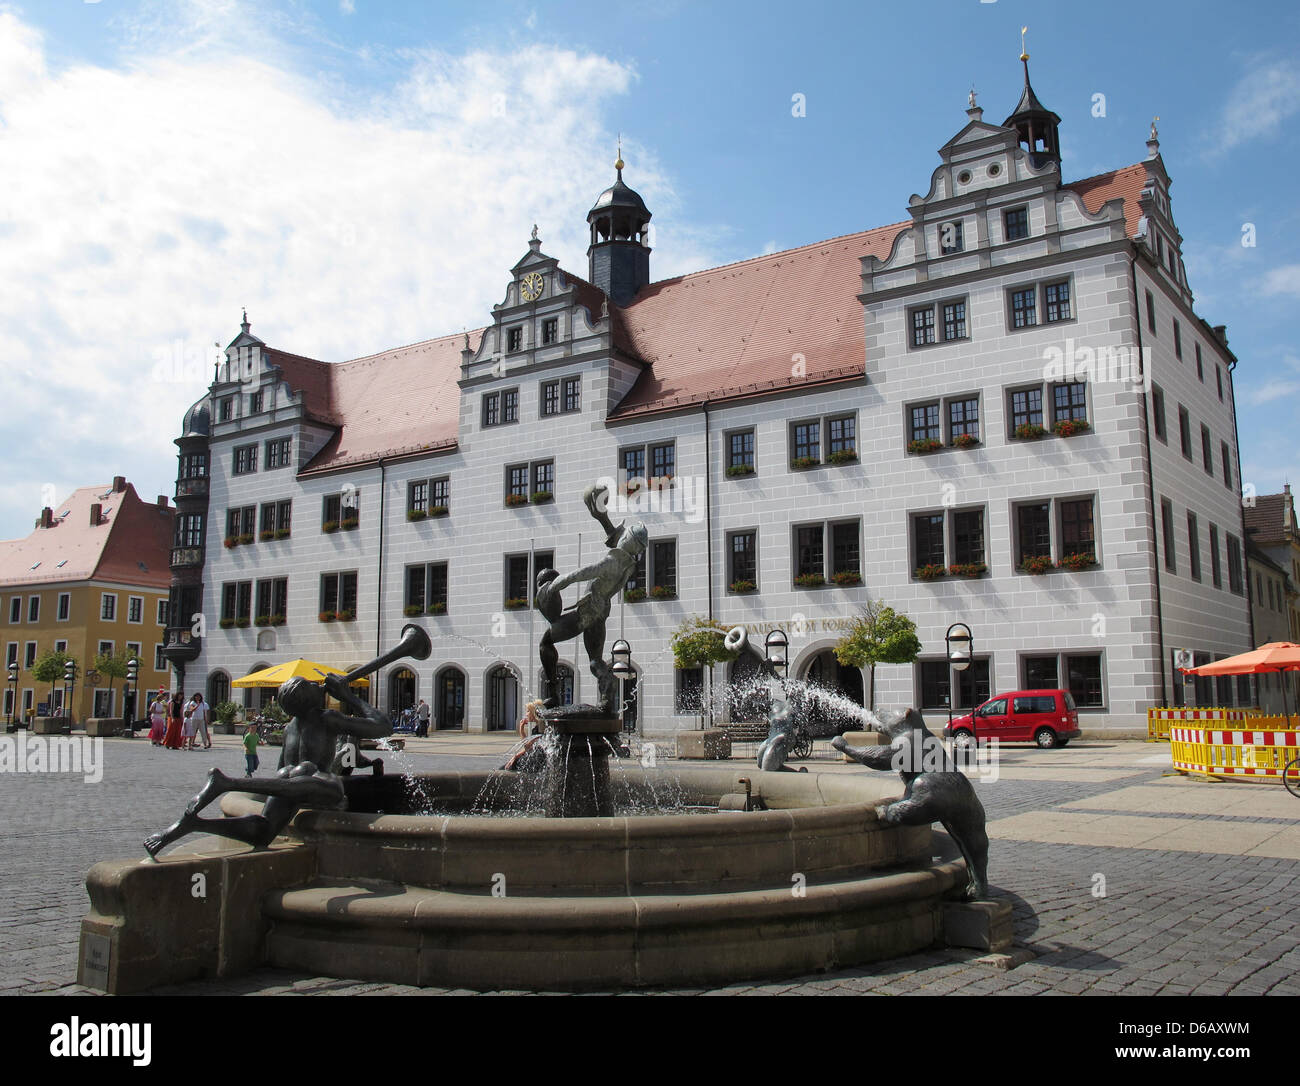 Das Rathaus und der Brunnen befindet sich auf dem Marktplatz der Stadt Torgau sind am 4. August 2012, Deutschland abgebildet. Das Rathaus wurde zwischen 1563 und 1578 im Renaissancestil erbaut. Der Brunnen wurde von Erika Harborth entworfen. Foto: Jen Kalaene Stockfoto